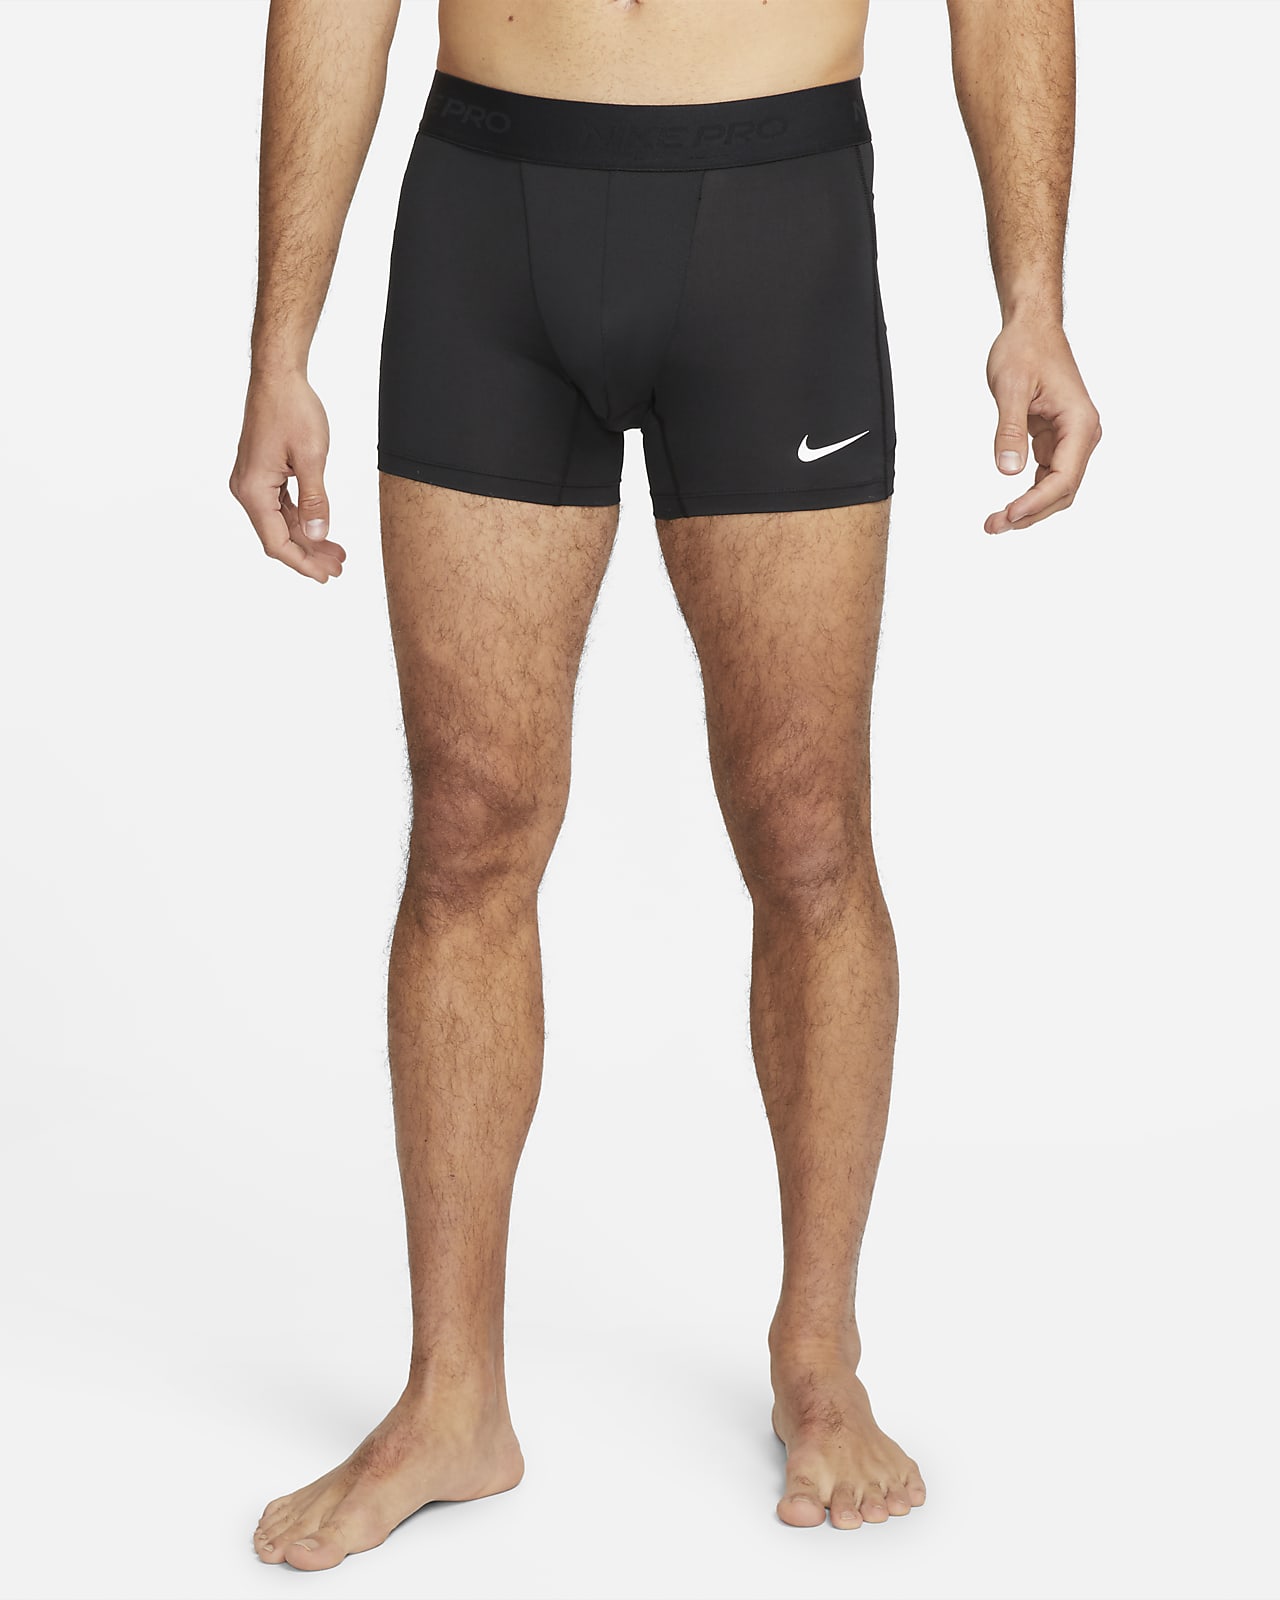 Short avec sous-short intégré Dri-FIT Nike Pro pour homme. Nike LU